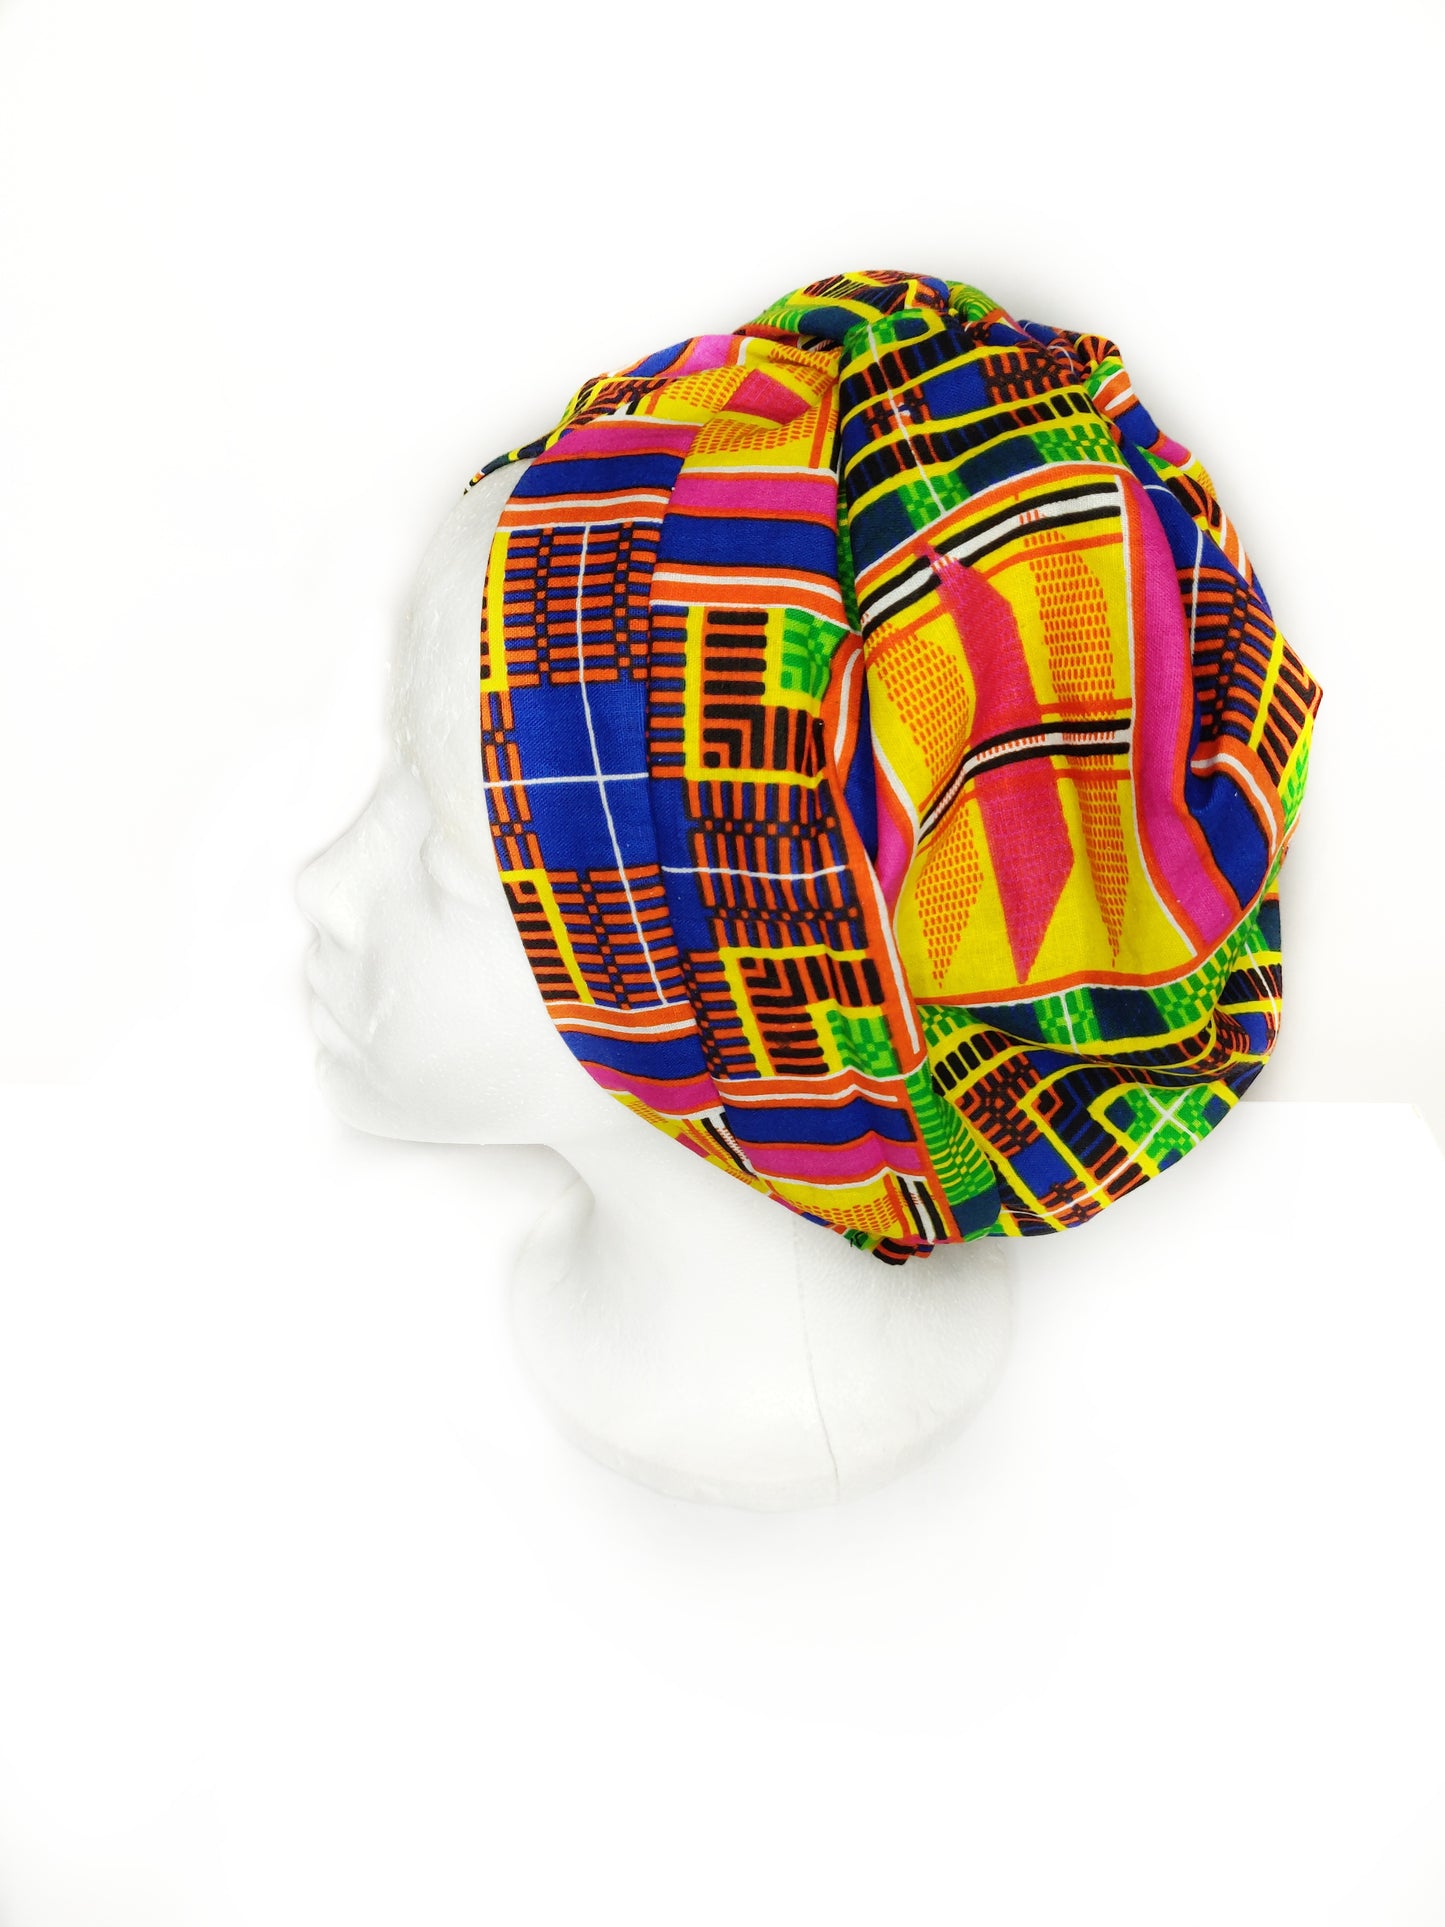 N Y A S A  - African Print Turban Hat